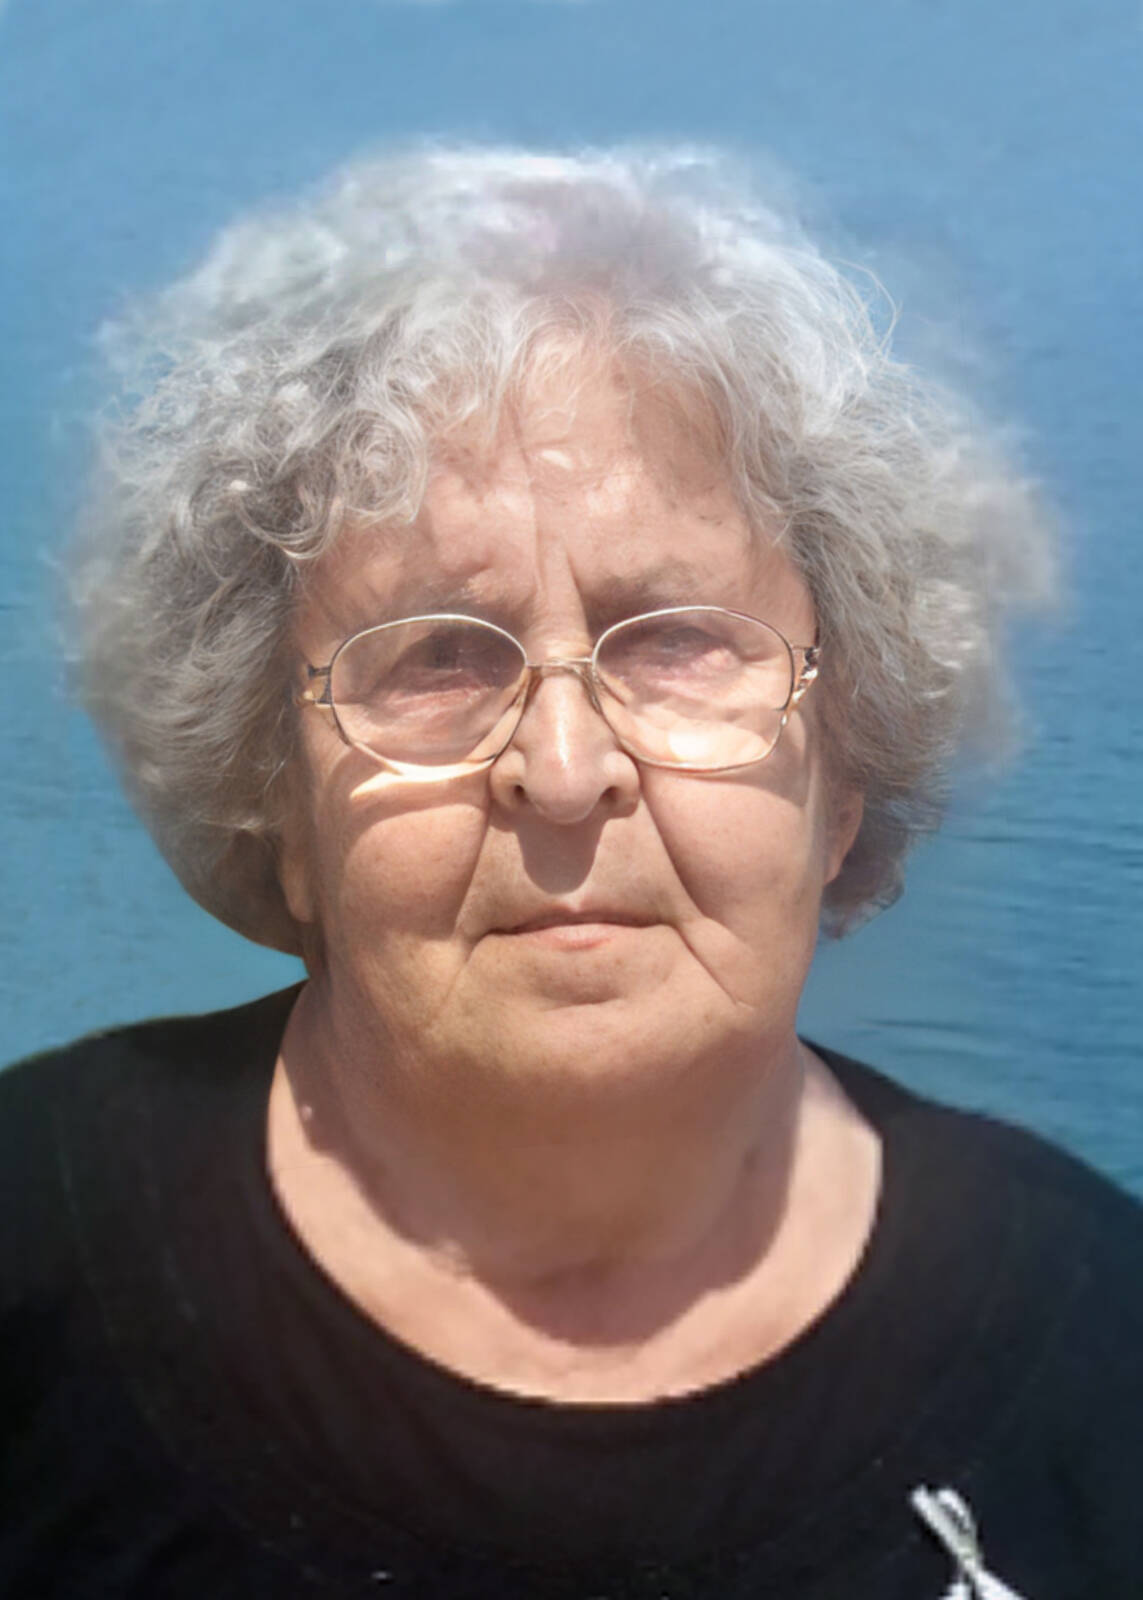 Έφυγε από την ζωή η Σοφία Νικολαΐδου σε ηλικία 86 ετών – Η κηδεία θα τελεστεί το Σάββατο 30 Σεπτεμβρίου